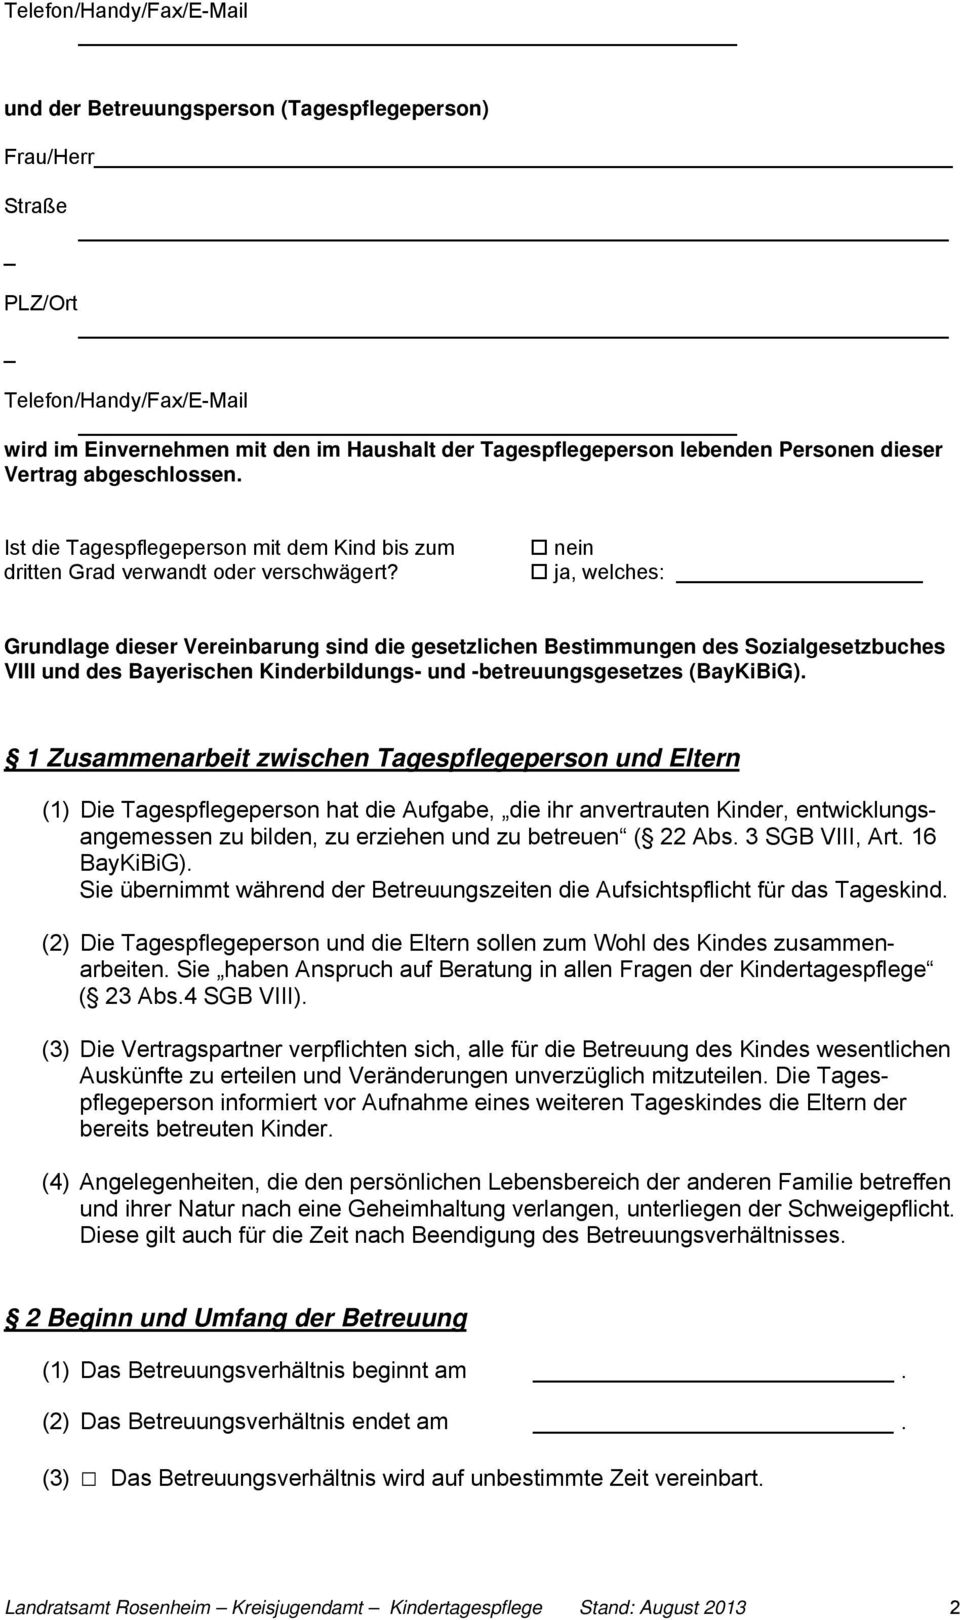 nein ja, welches: Grundlage dieser Vereinbarung sind die gesetzlichen Bestimmungen des Sozialgesetzbuches VIII und des Bayerischen Kinderbildungs- und -betreuungsgesetzes (BayKiBiG).